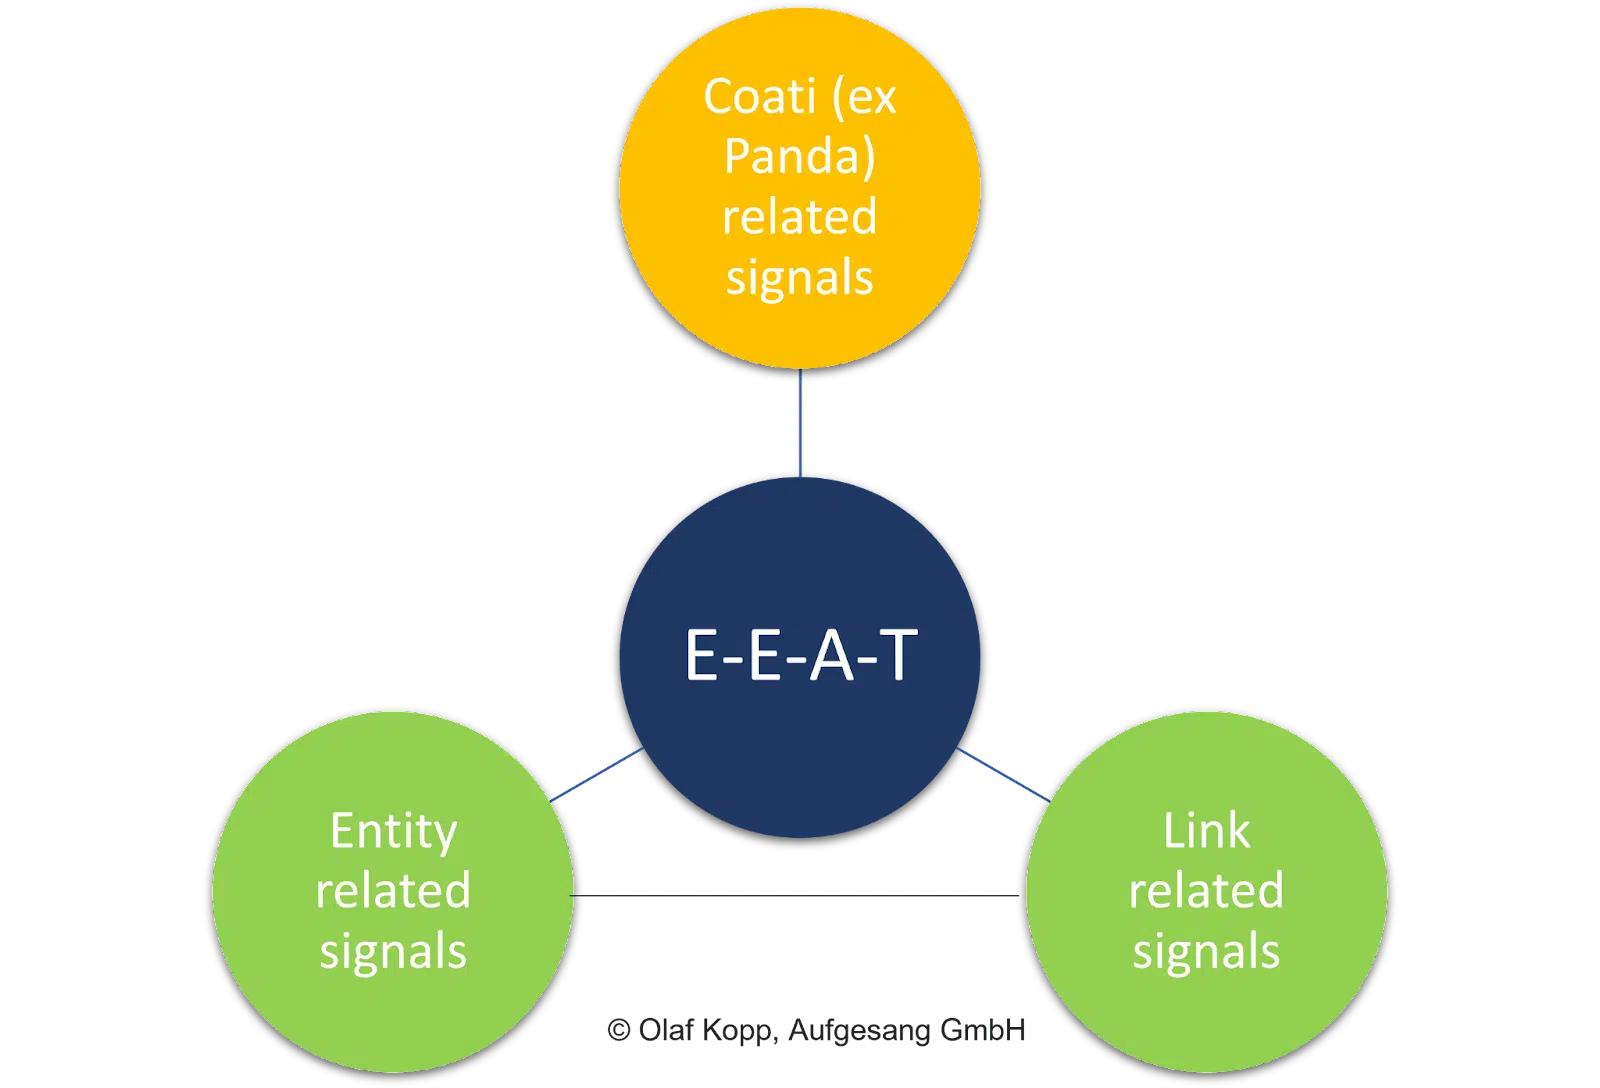 E-E-A-T signals